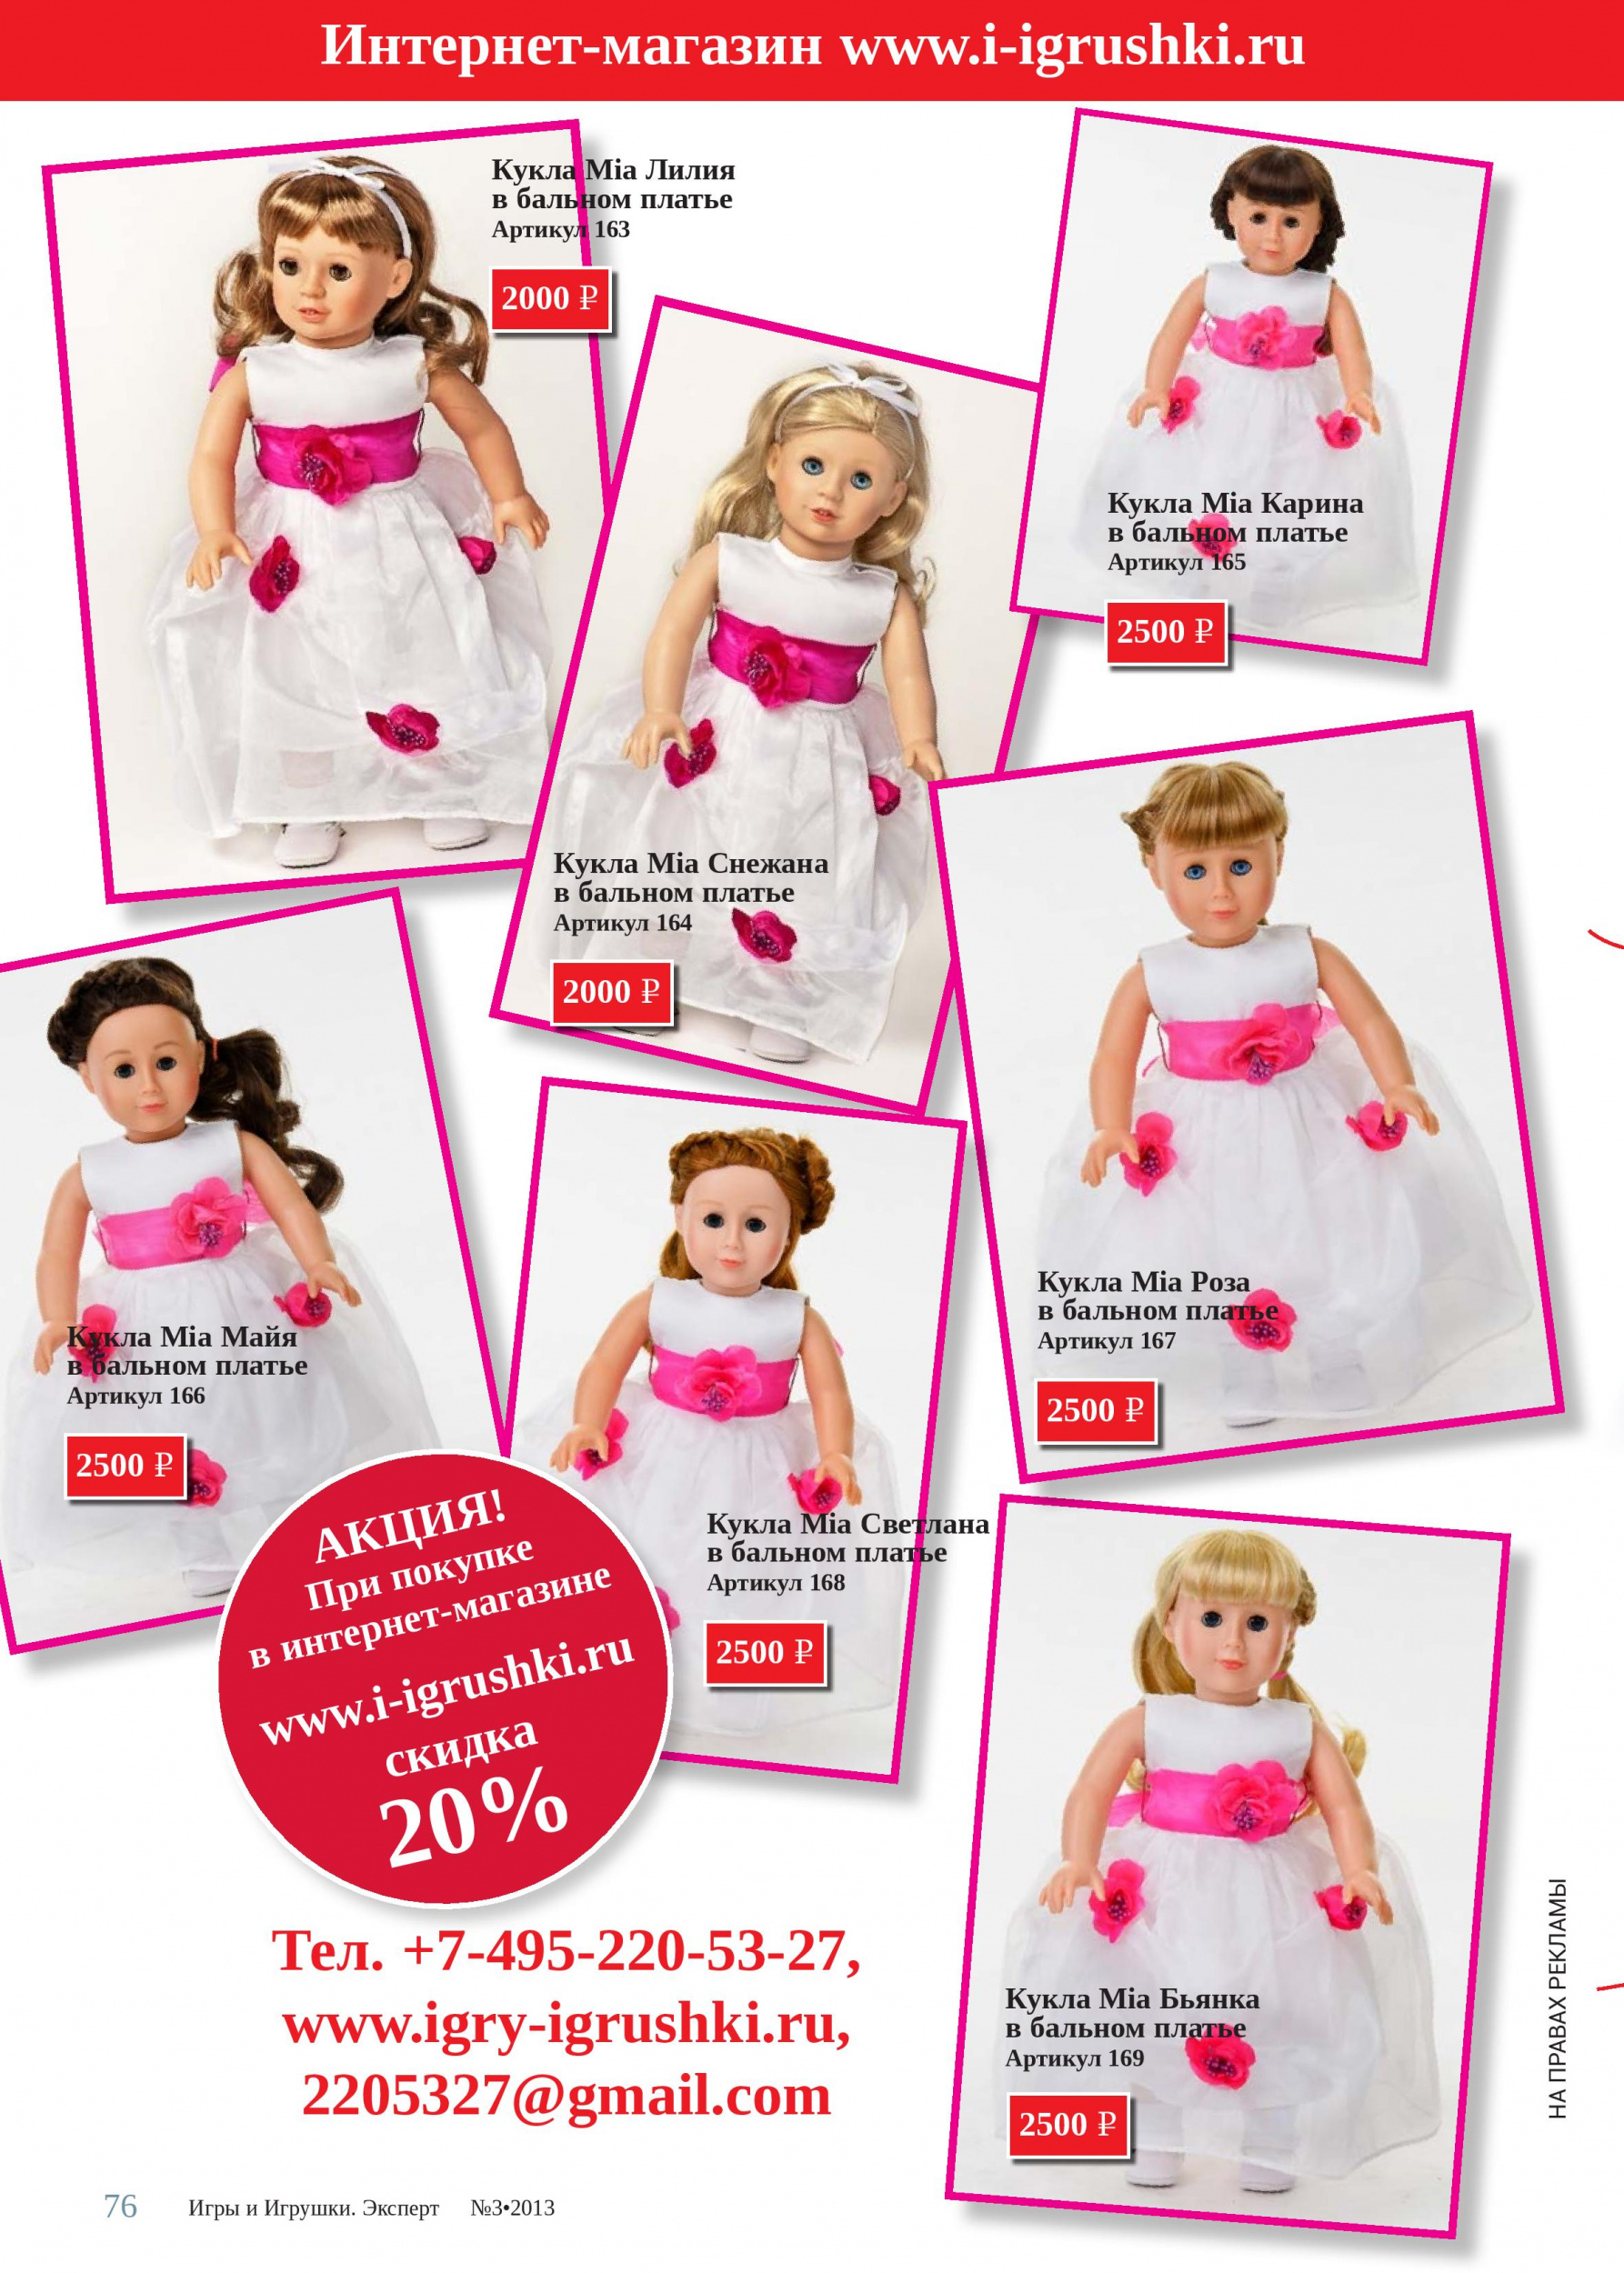 При покупке куклы Mia - скидка 20%